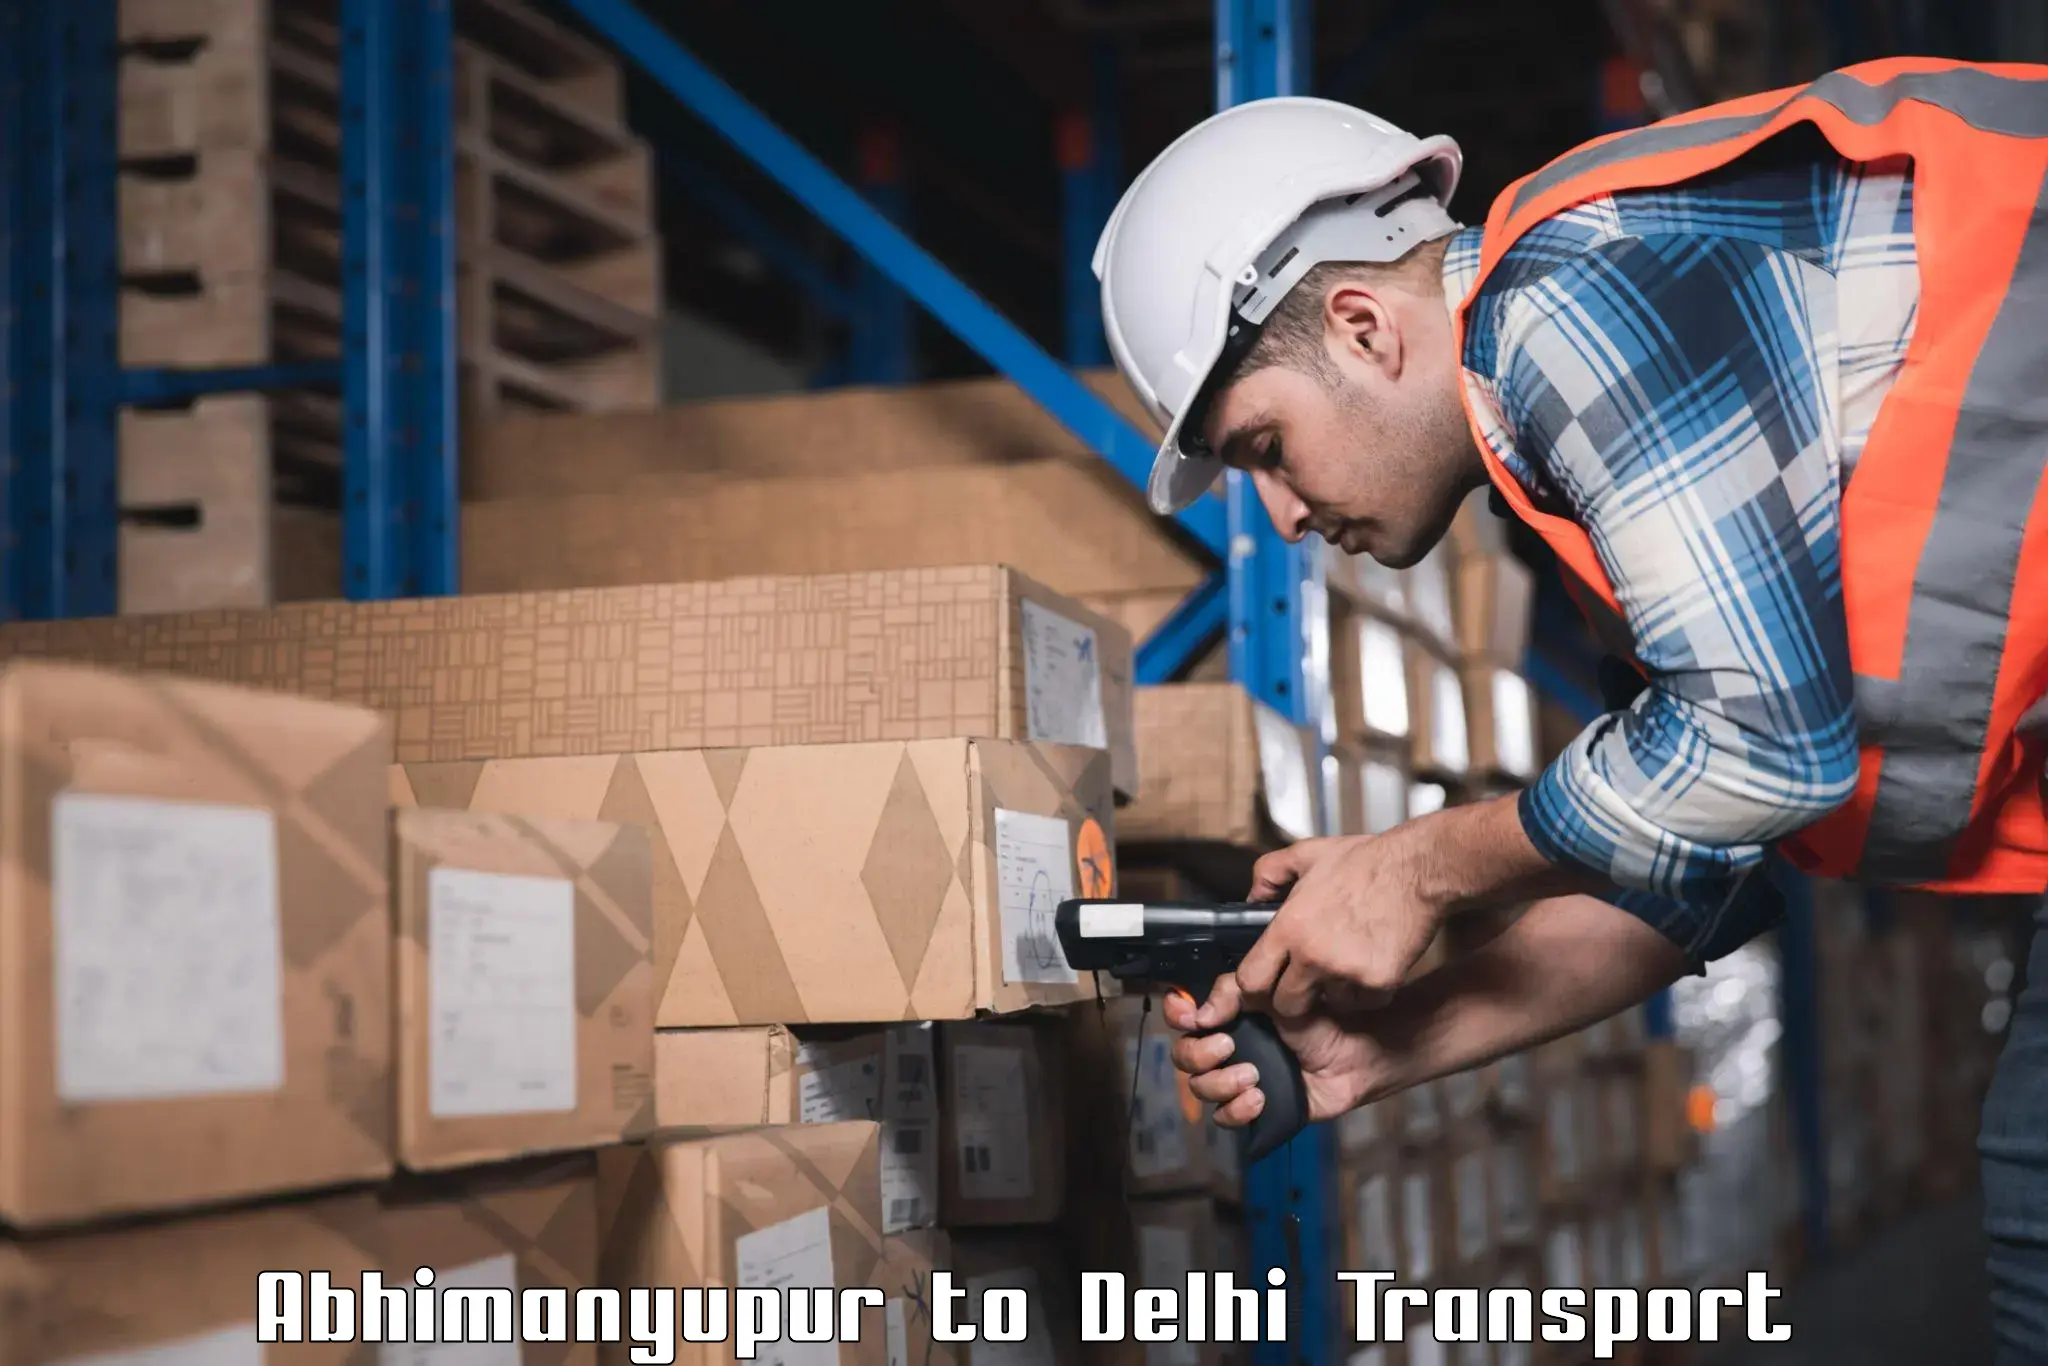 Air cargo transport services Abhimanyupur to Sarojini Nagar